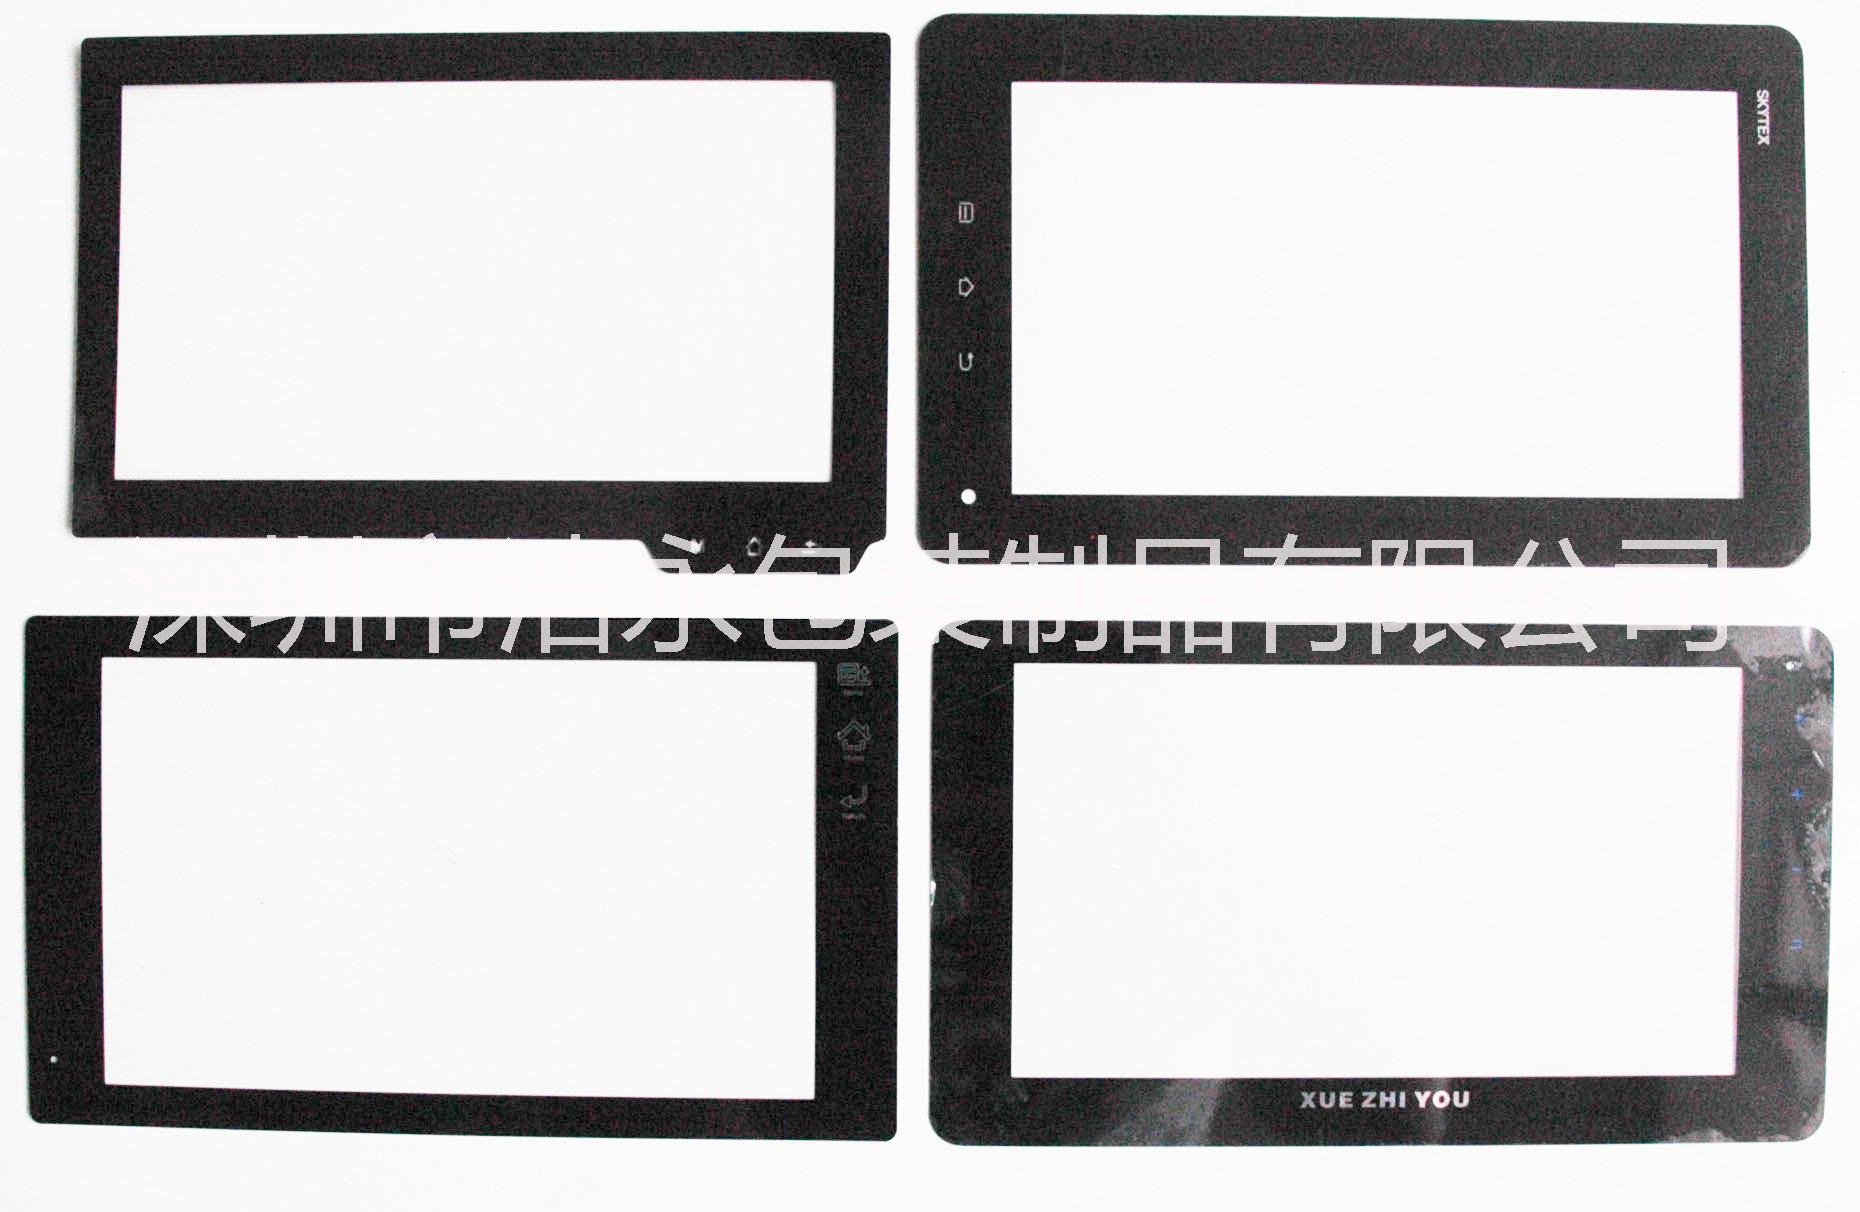 供应镜片印刷  供应用于显示屏面板的镜片  供应用于显示屏面板的镜片印刷